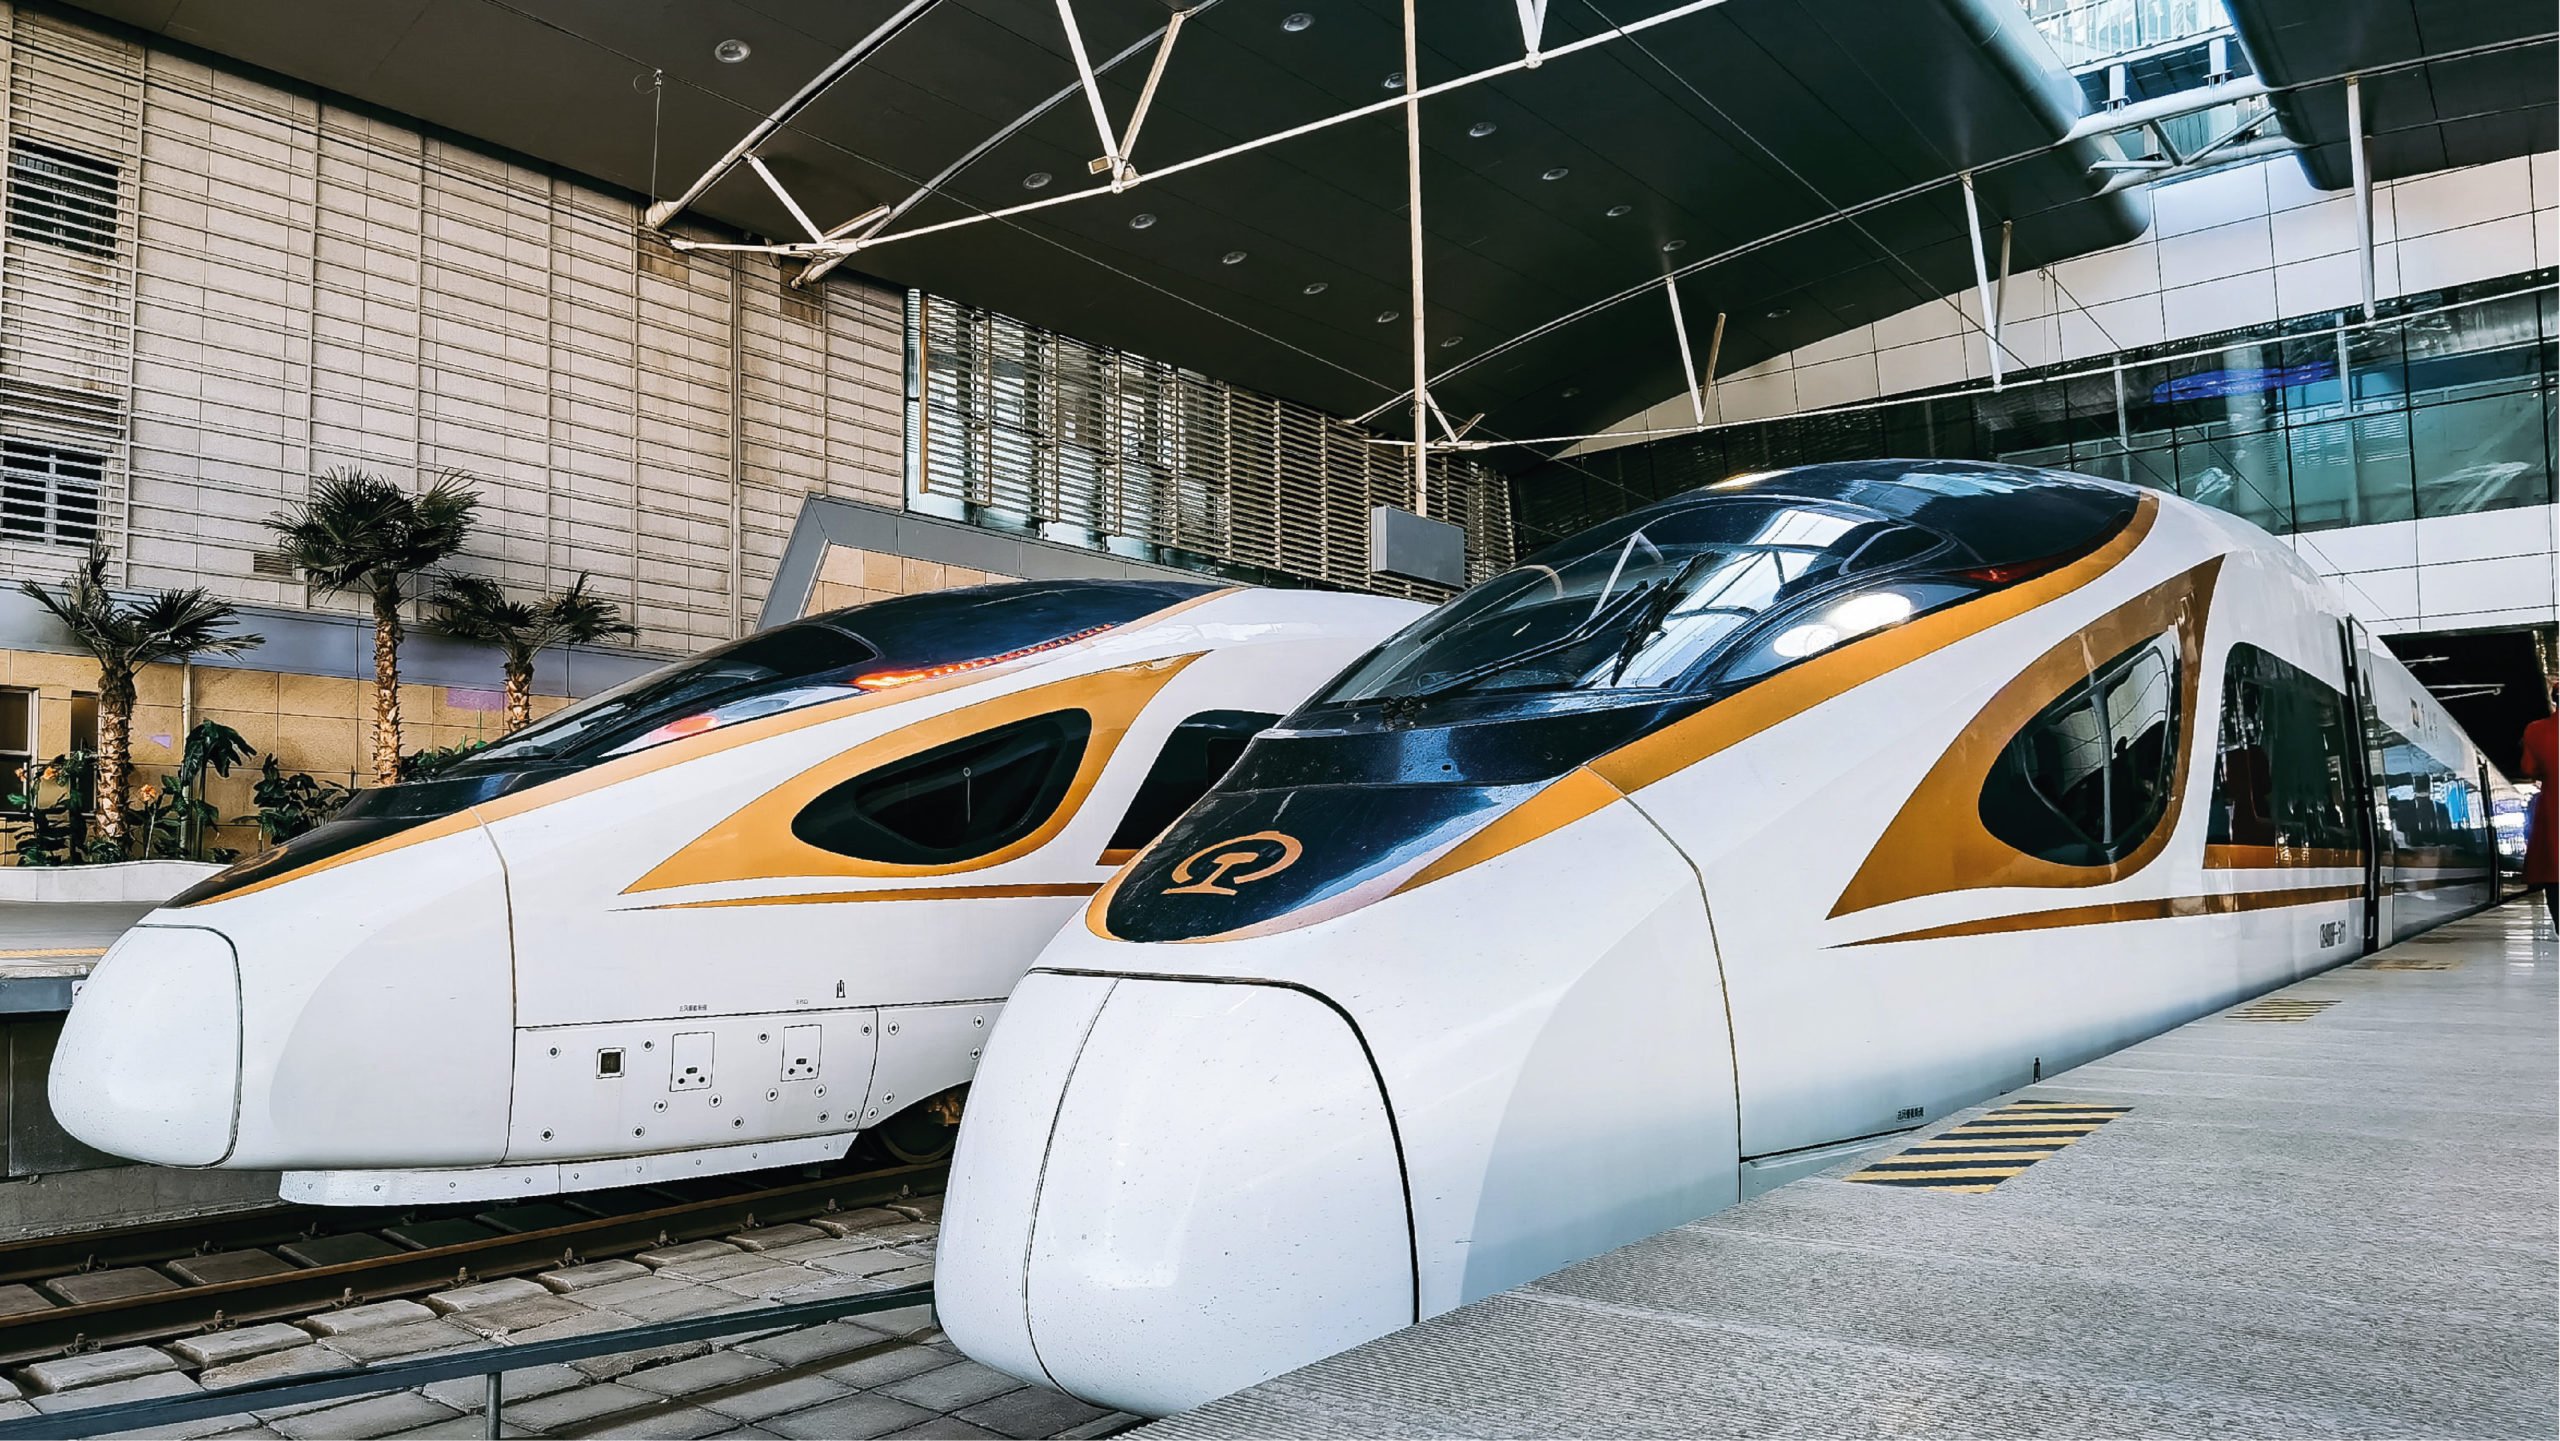 Expertos chinos proponen poner alas a trenes bala para acelerarlos 30%